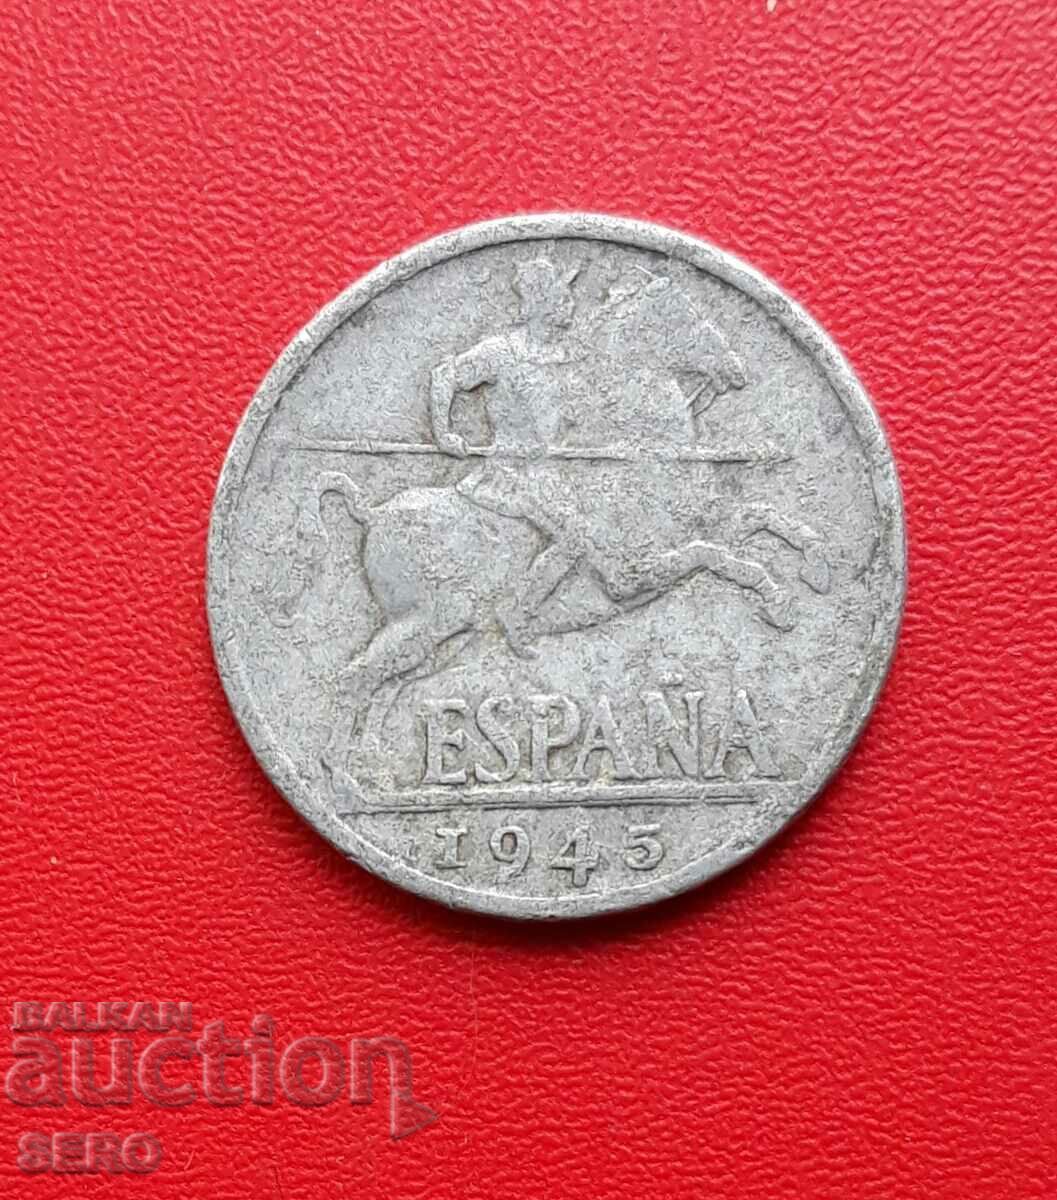 Spania-10 cenți 1945